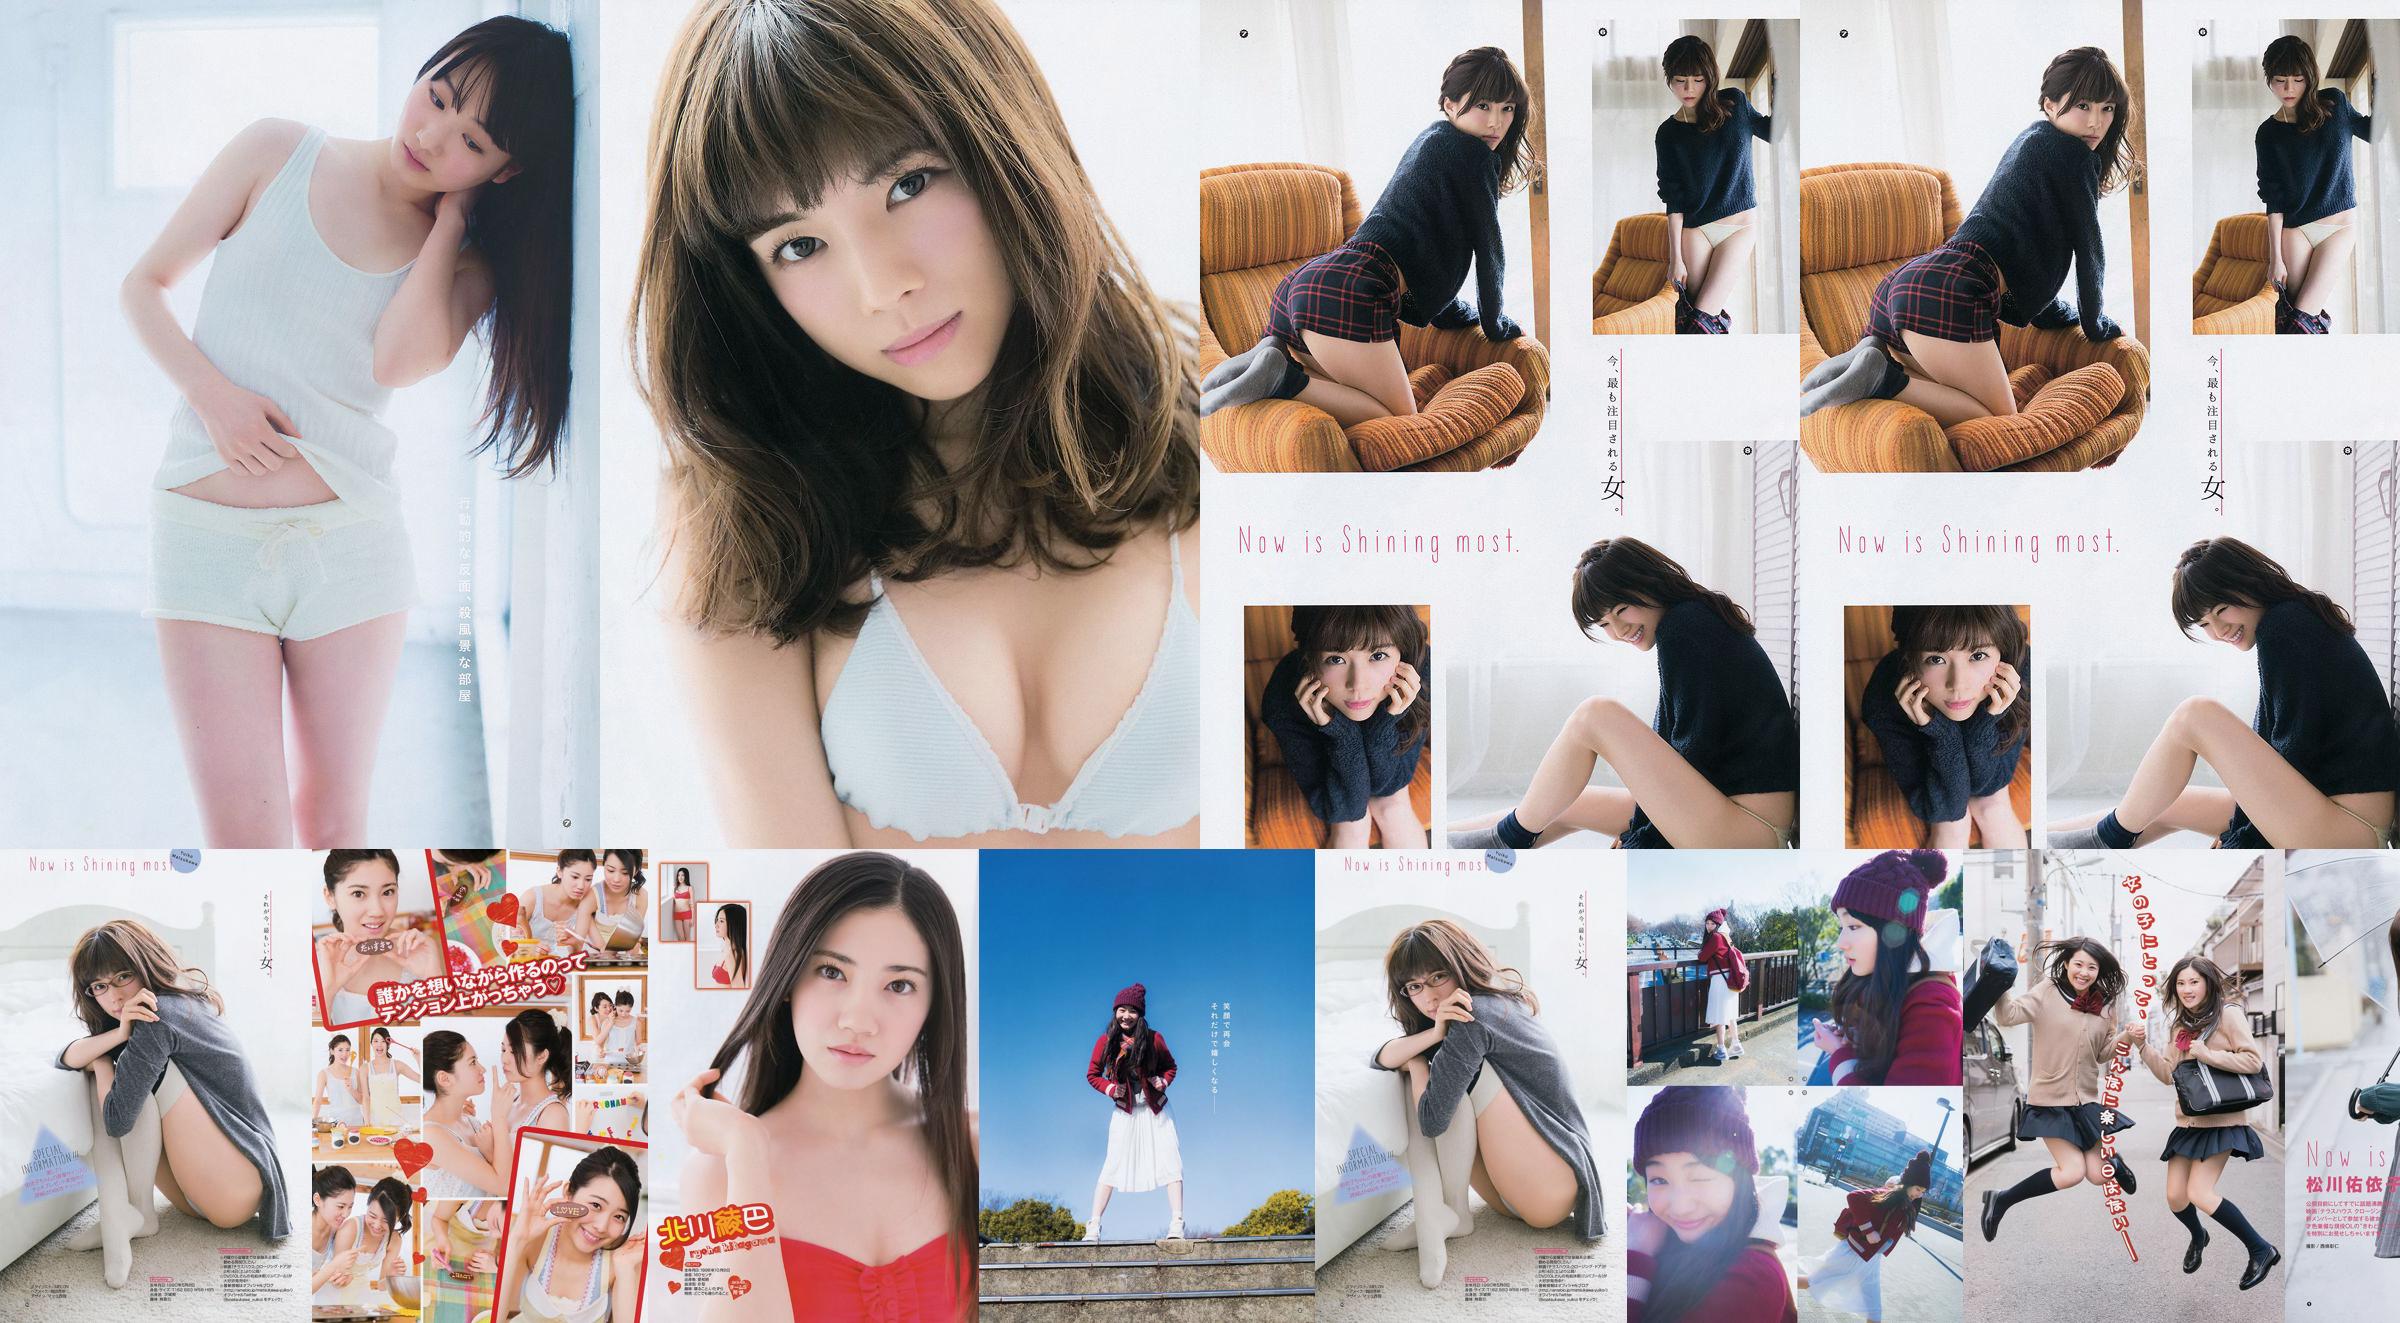 [Young Gangan] Ryoha Kitagawa Ami Miyamae Yuiko Matsukawa Narumi Akizuki 2015 nr. 04 foto No.01a7aa Pagina 4